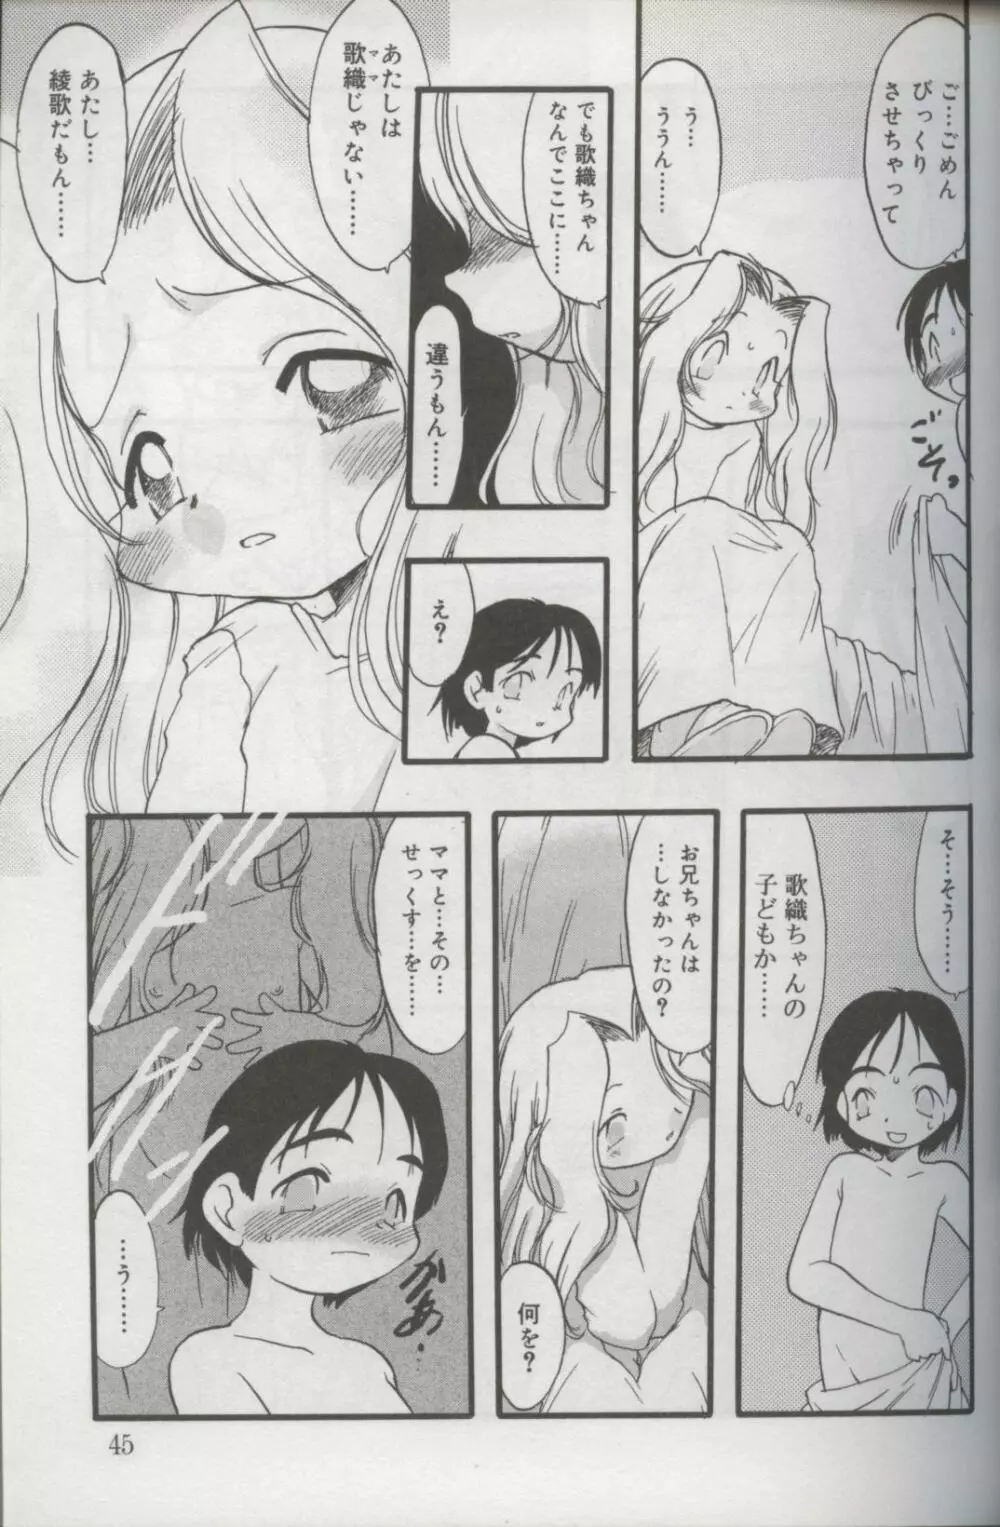 Kotori-kan Vol 3 42ページ